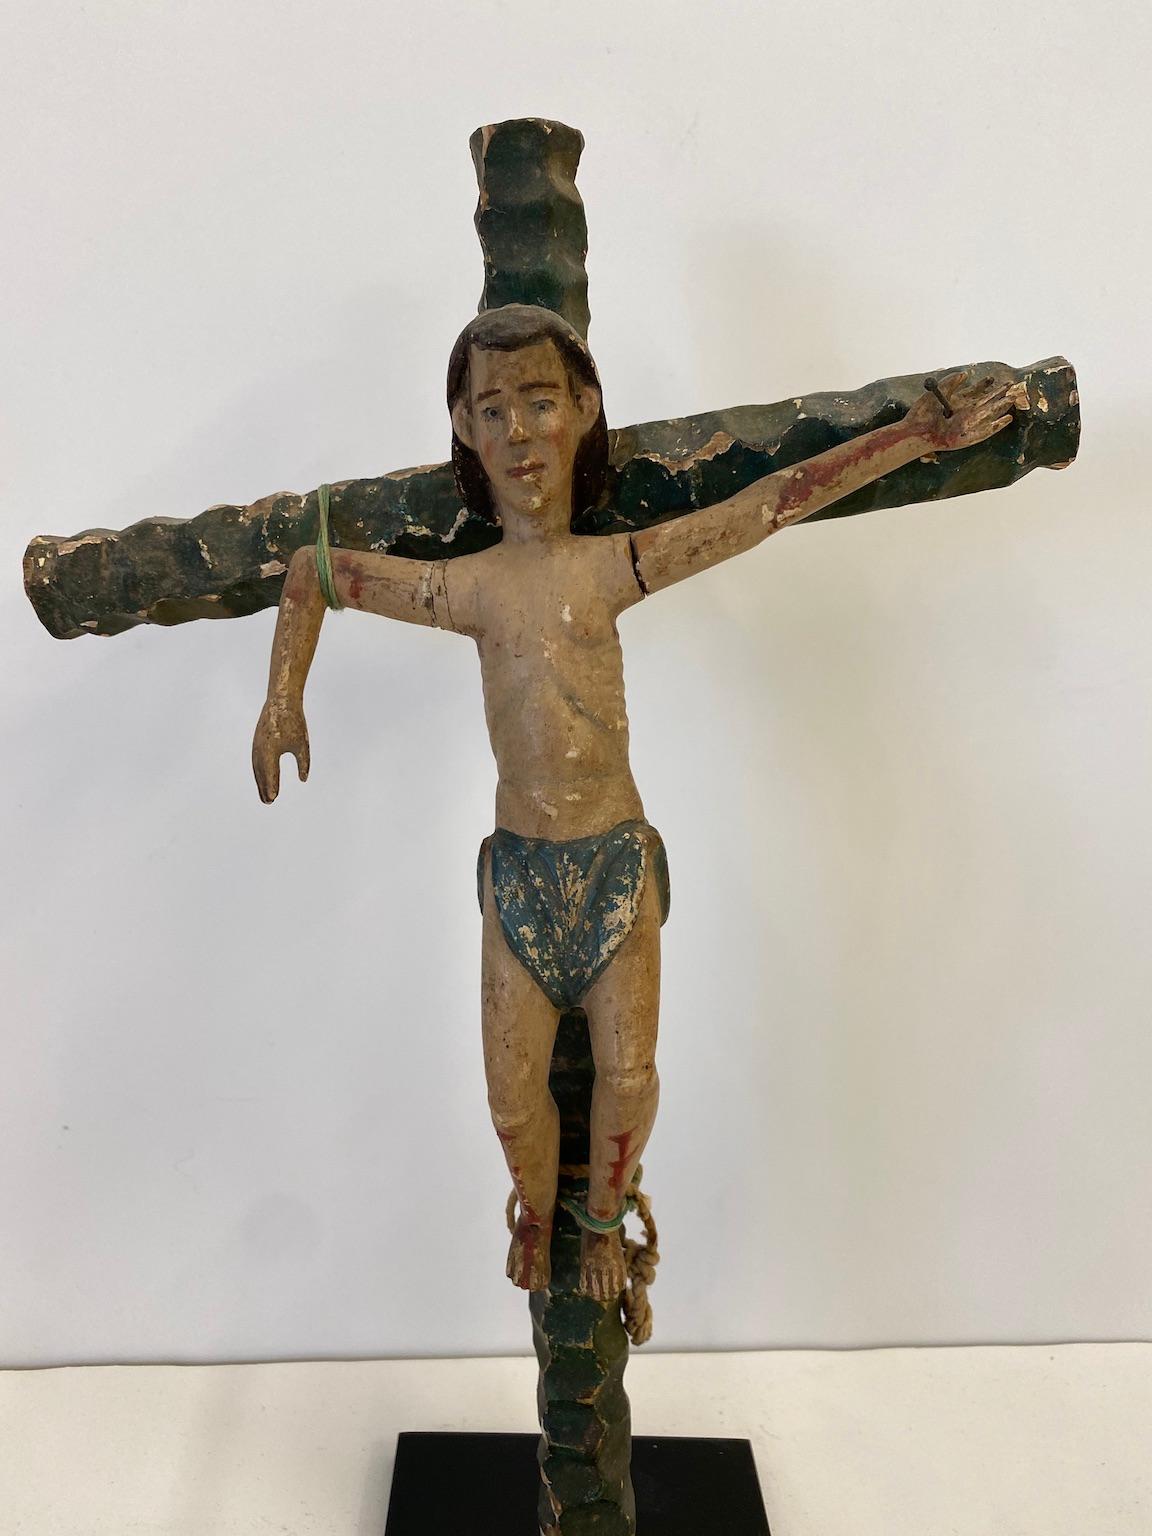 Deux personnages en bois sculpté sur des croix en bois, issus de l'histoire de la crucifixion du Christ. Ils représentent 